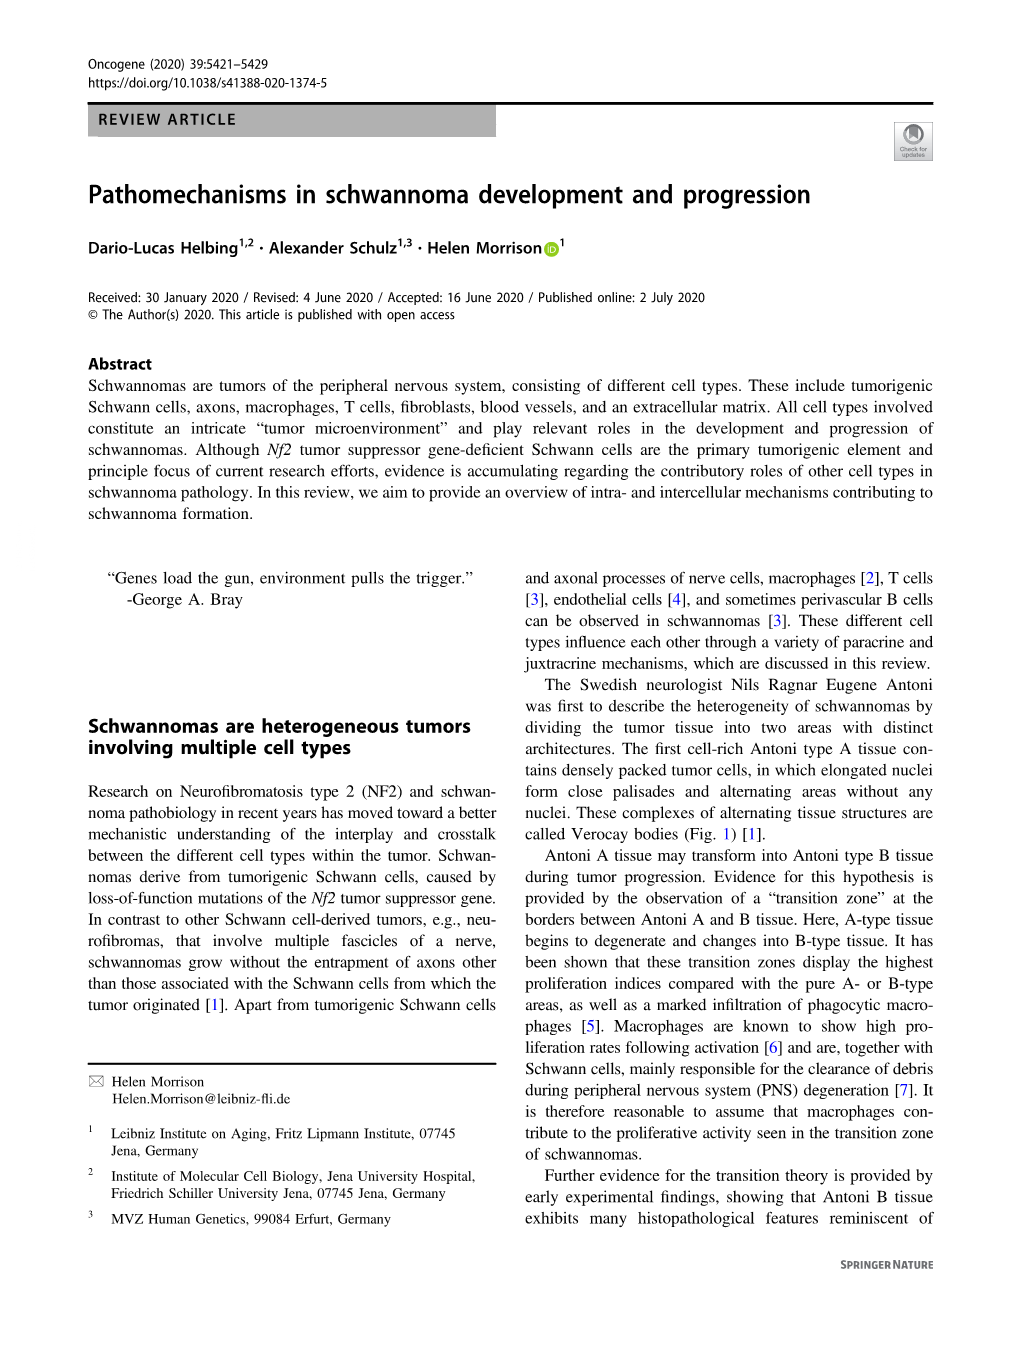 Pathomechanisms in Schwannoma Development and Progression